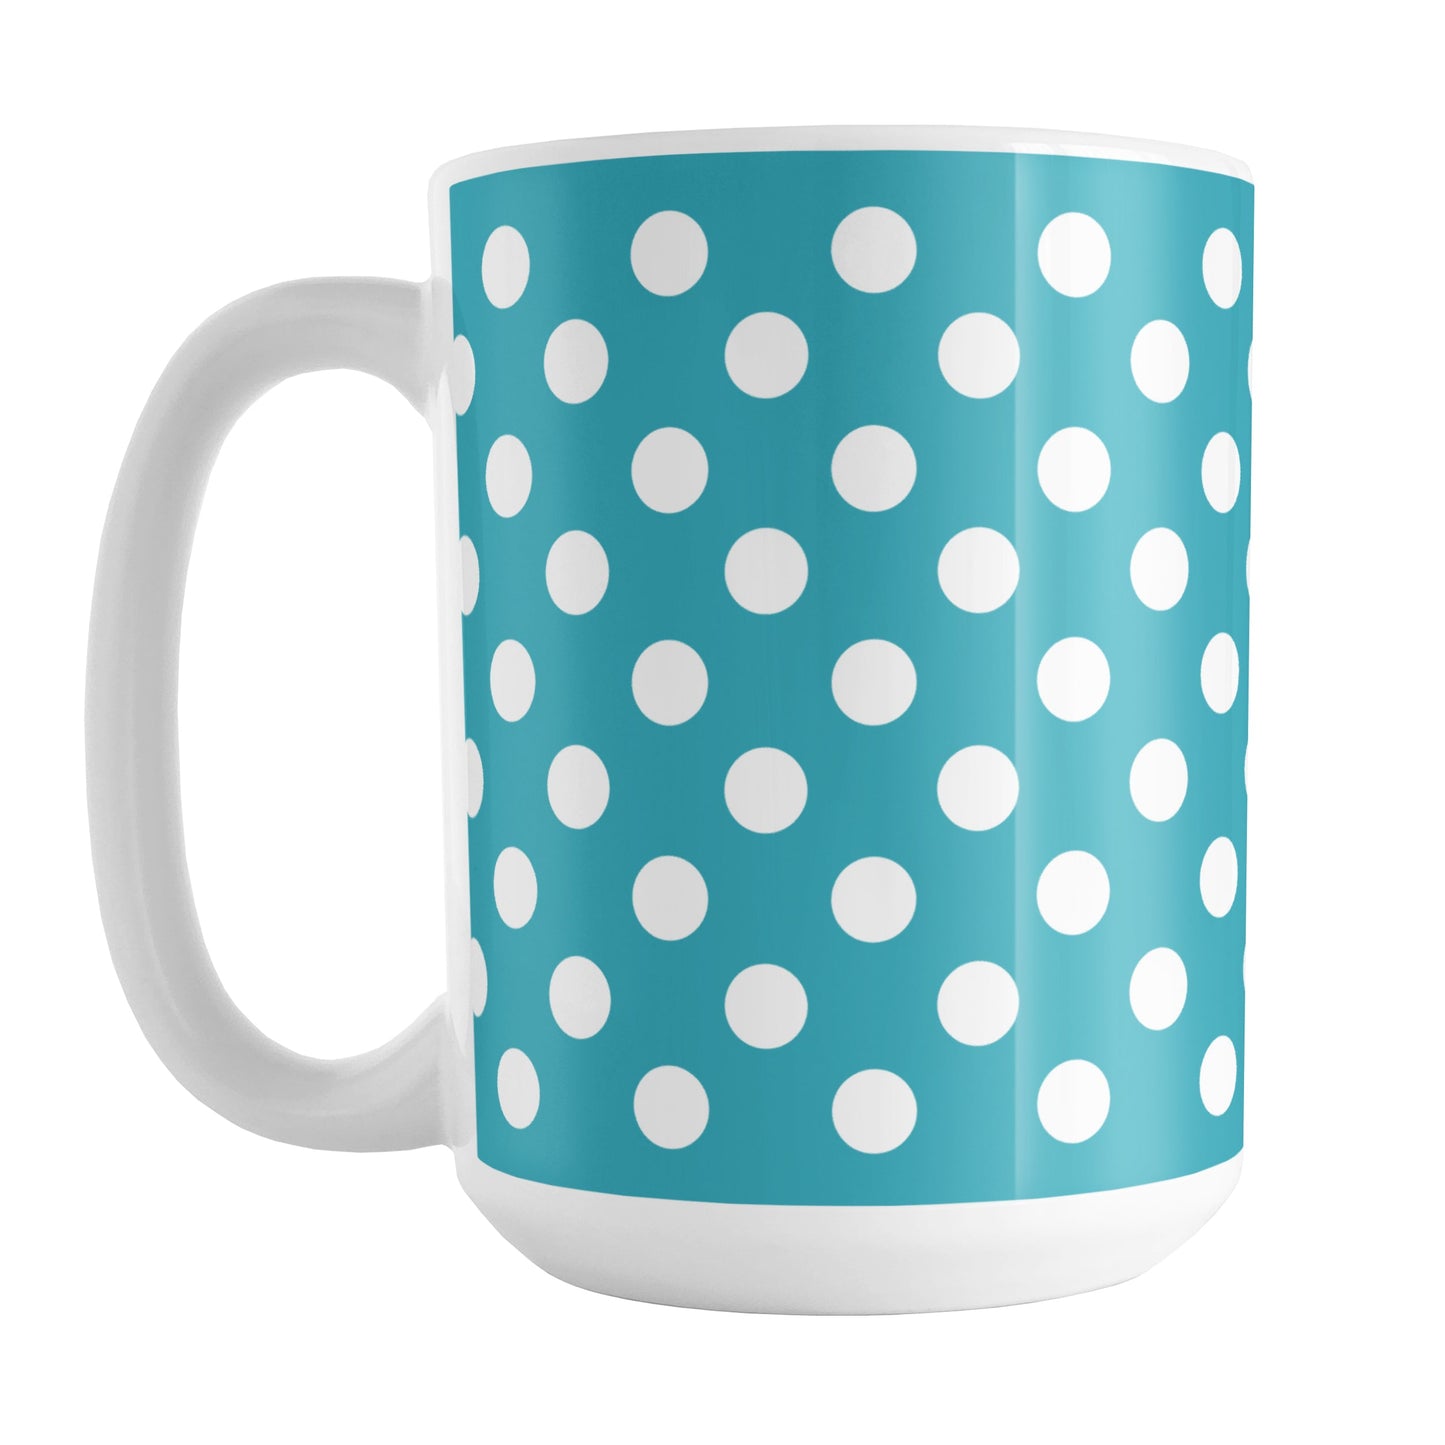 Turquoise Polka Dot Mug (15oz) at Amy's Coffee Mugs